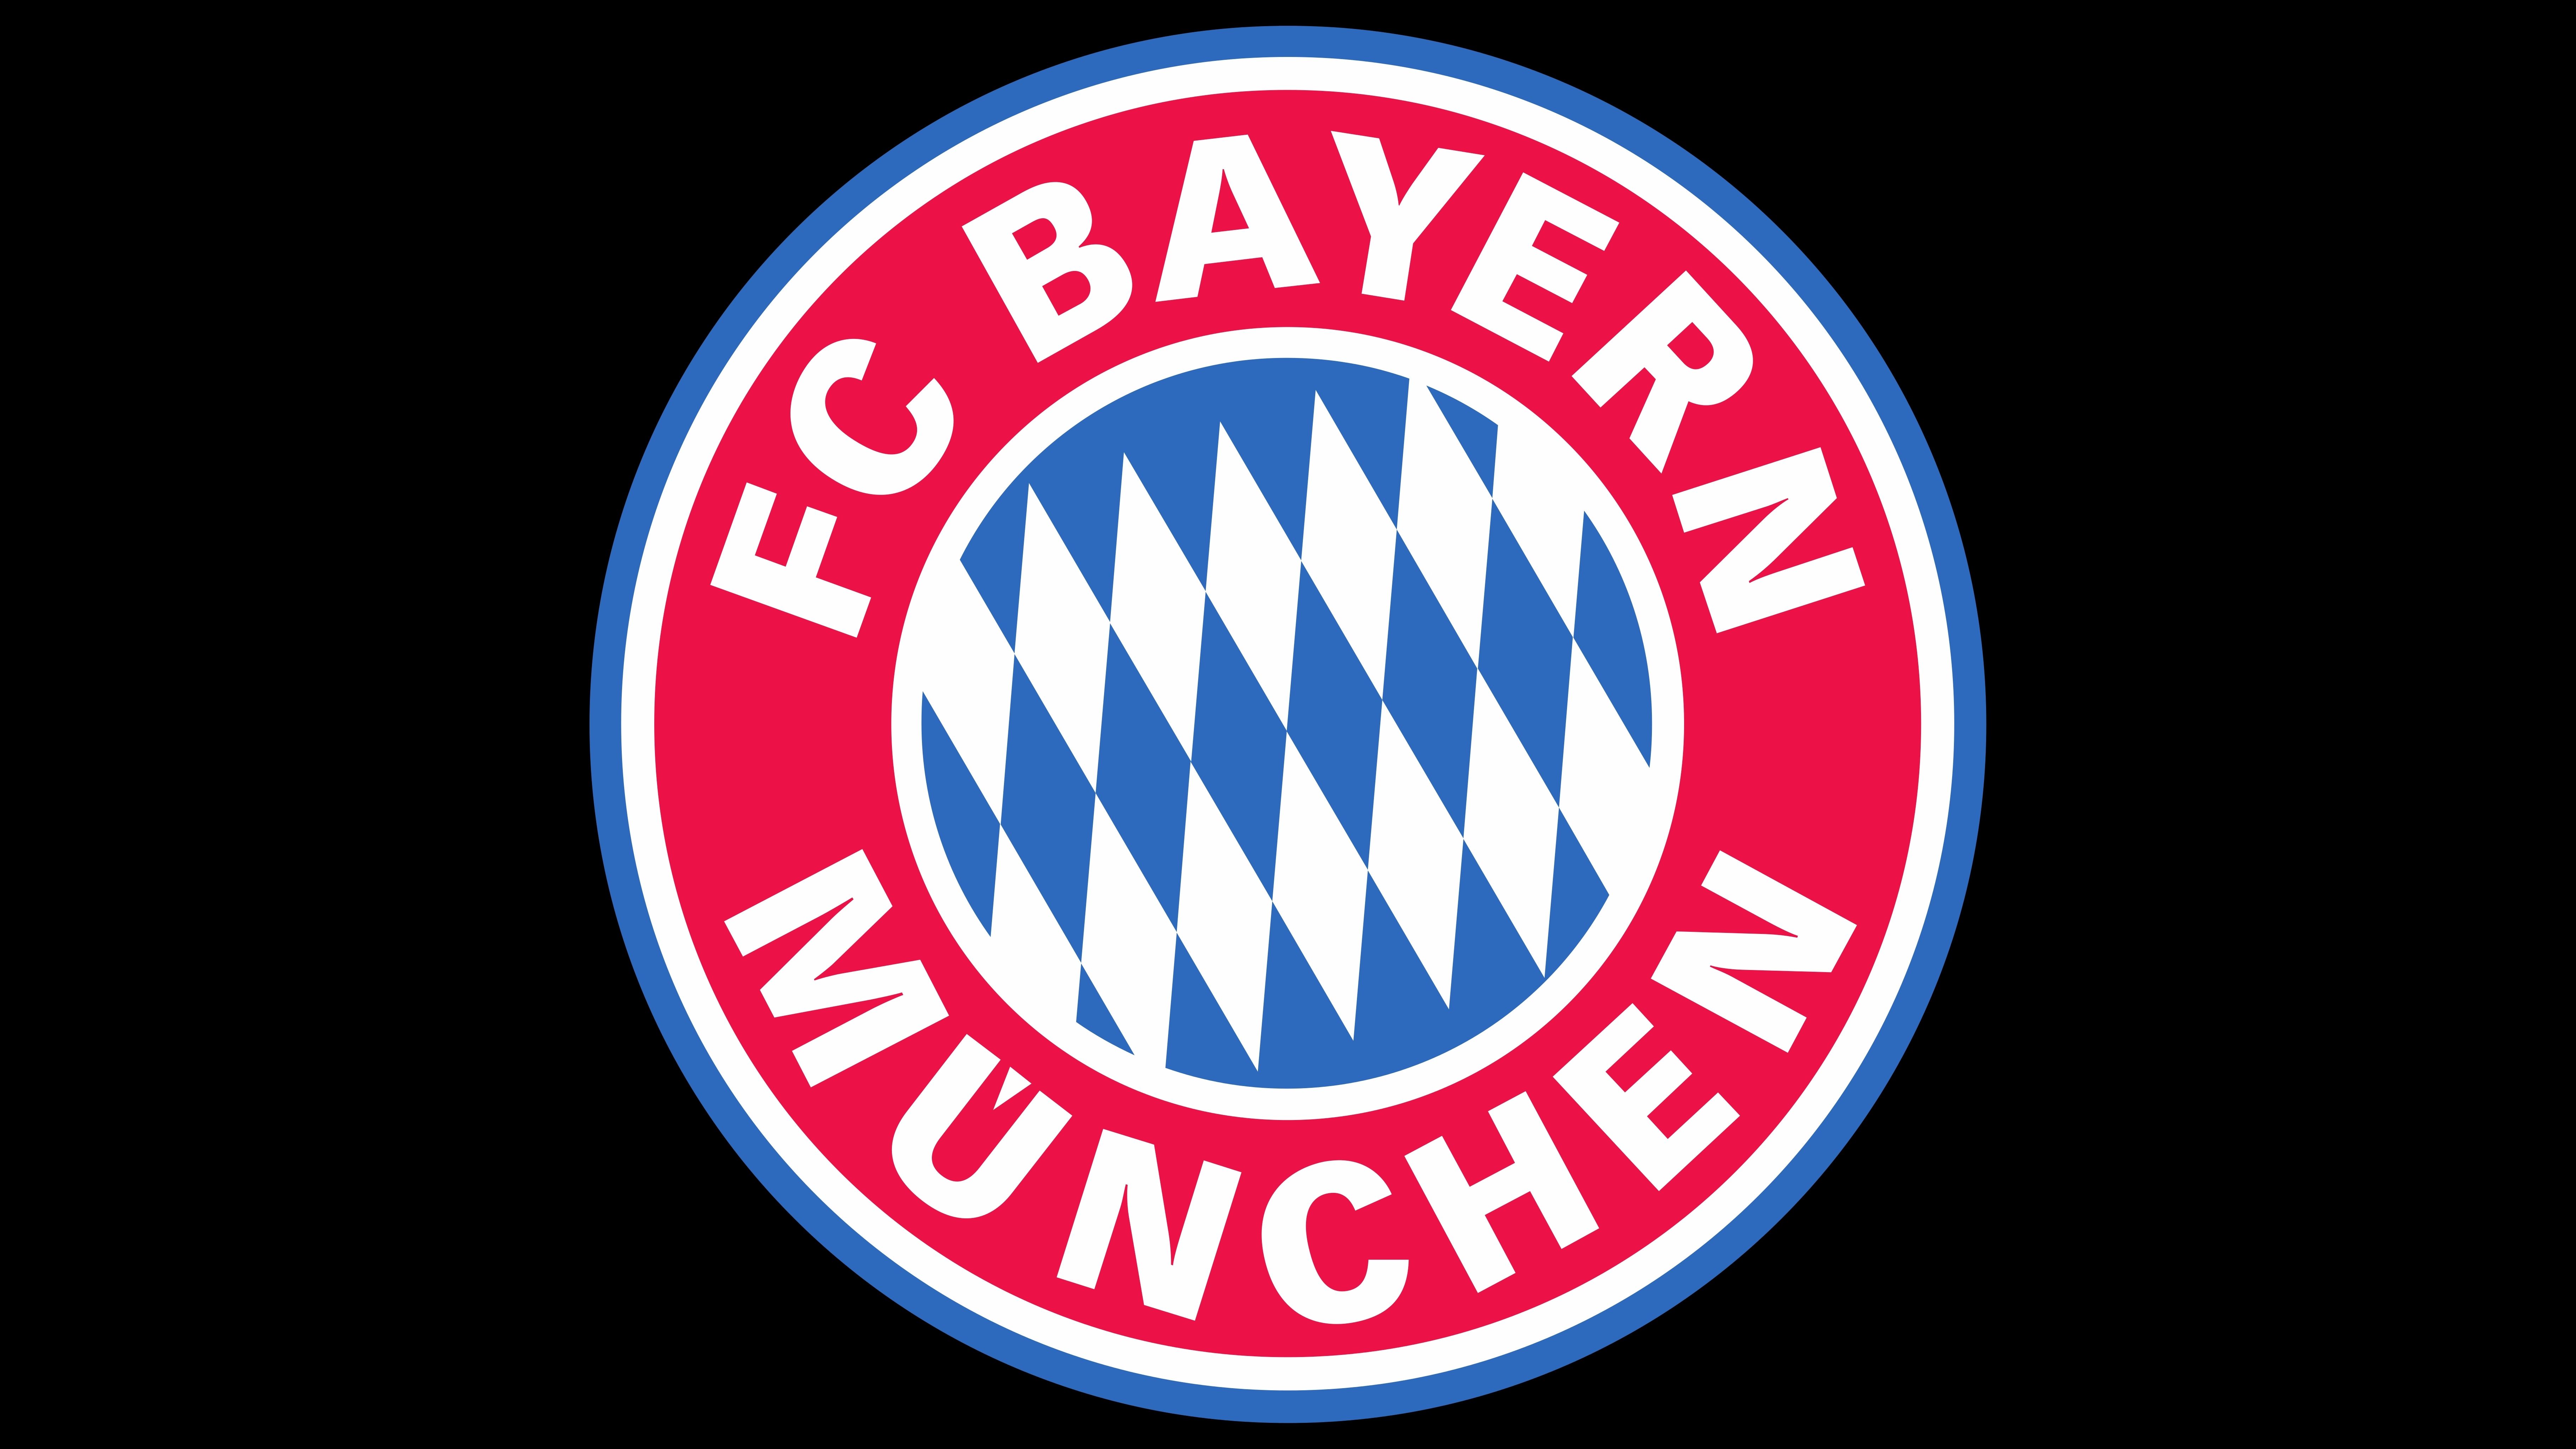 FC Bayern Munich Computer Wallpapers, Desktop Backgrounds ...